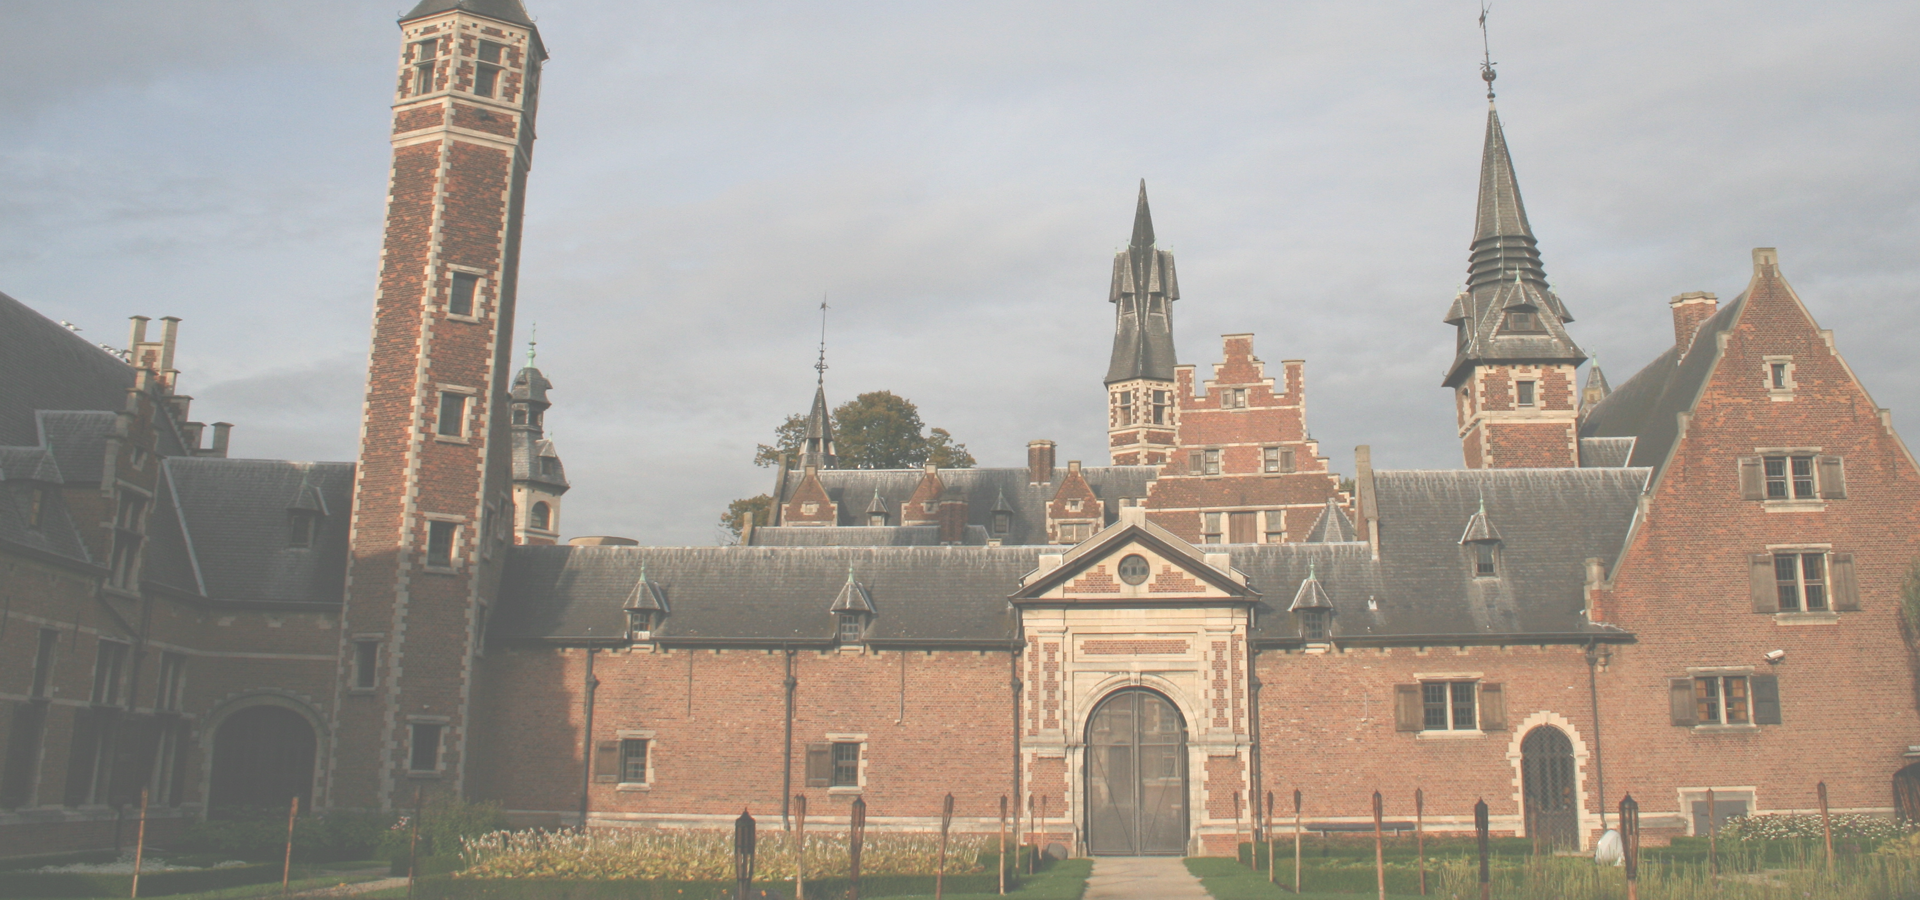 <b>Deurne, Antwerp Province, The Flemish Region, Belgium</b>